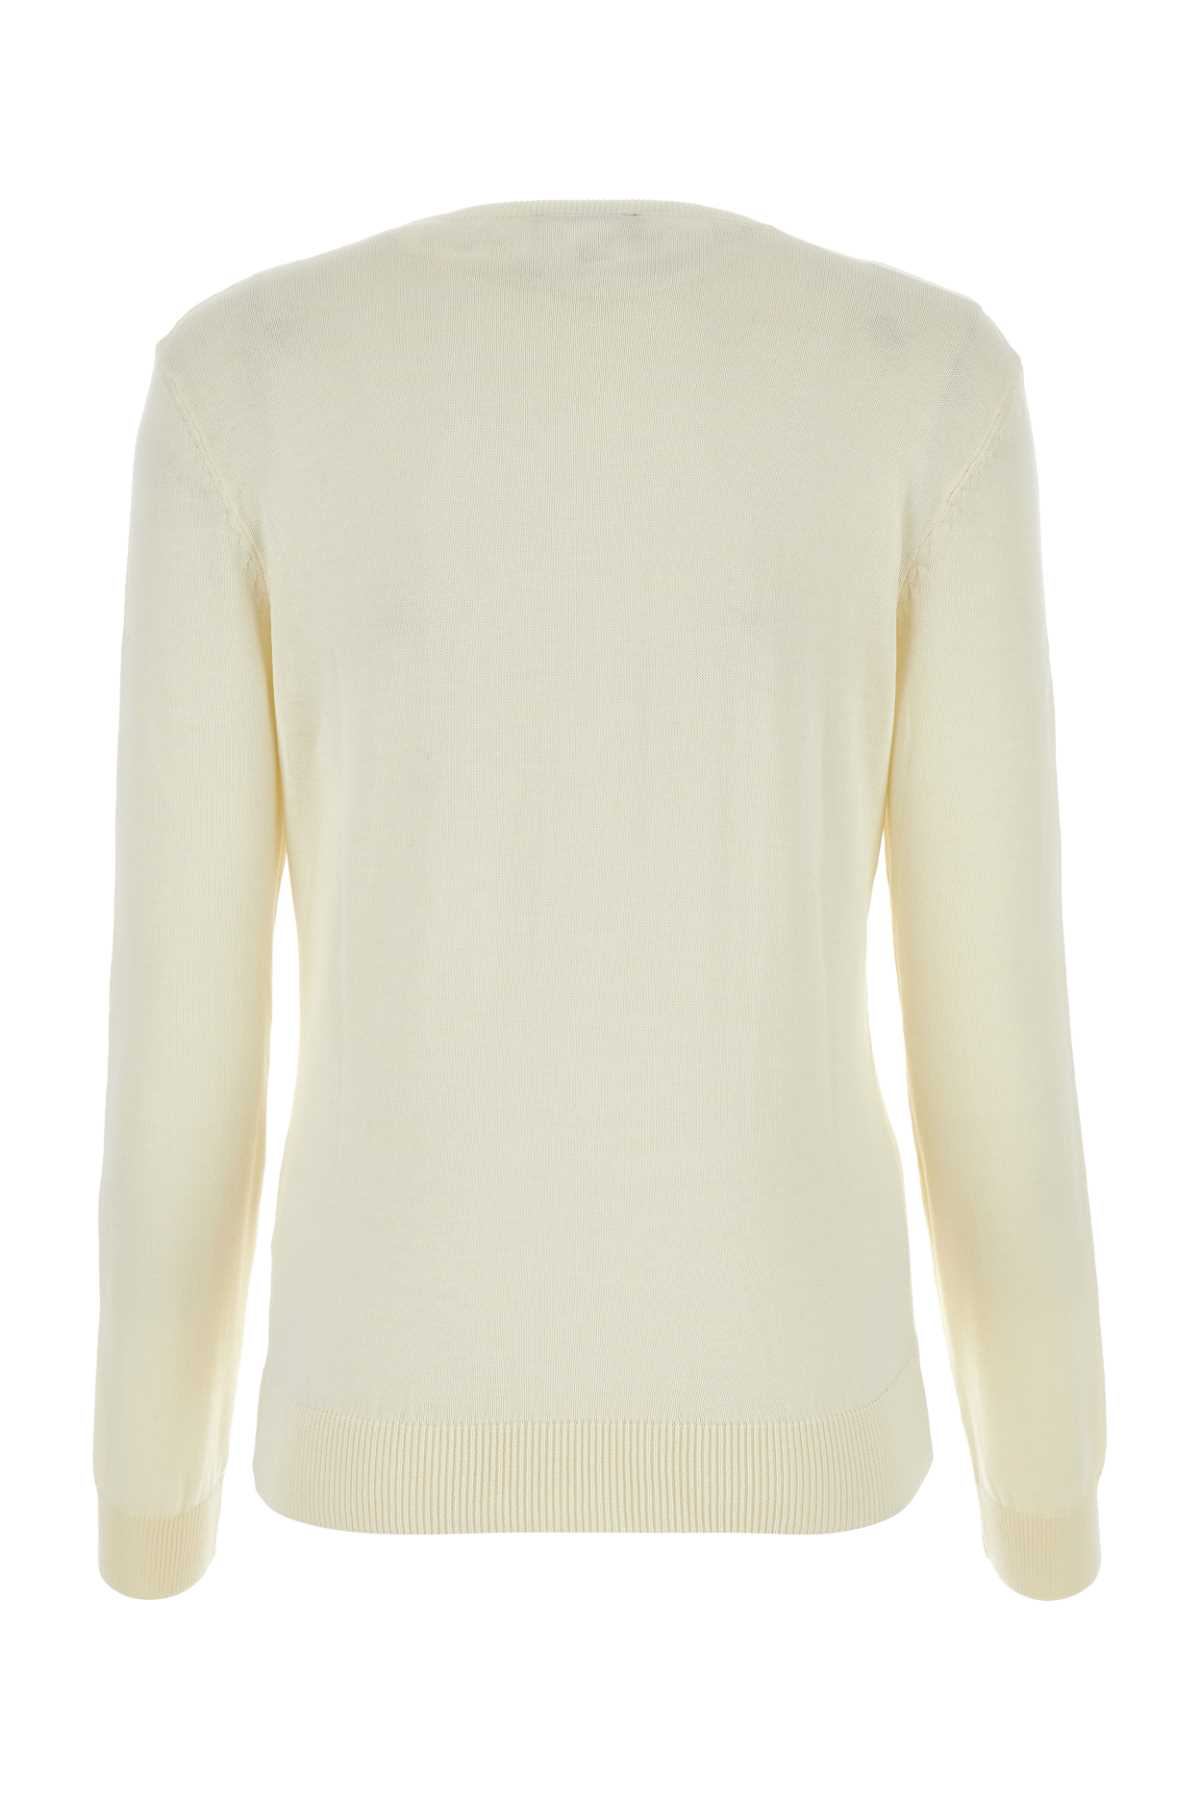 Apc Ivory Cotton Victoria Sweater In Ecru